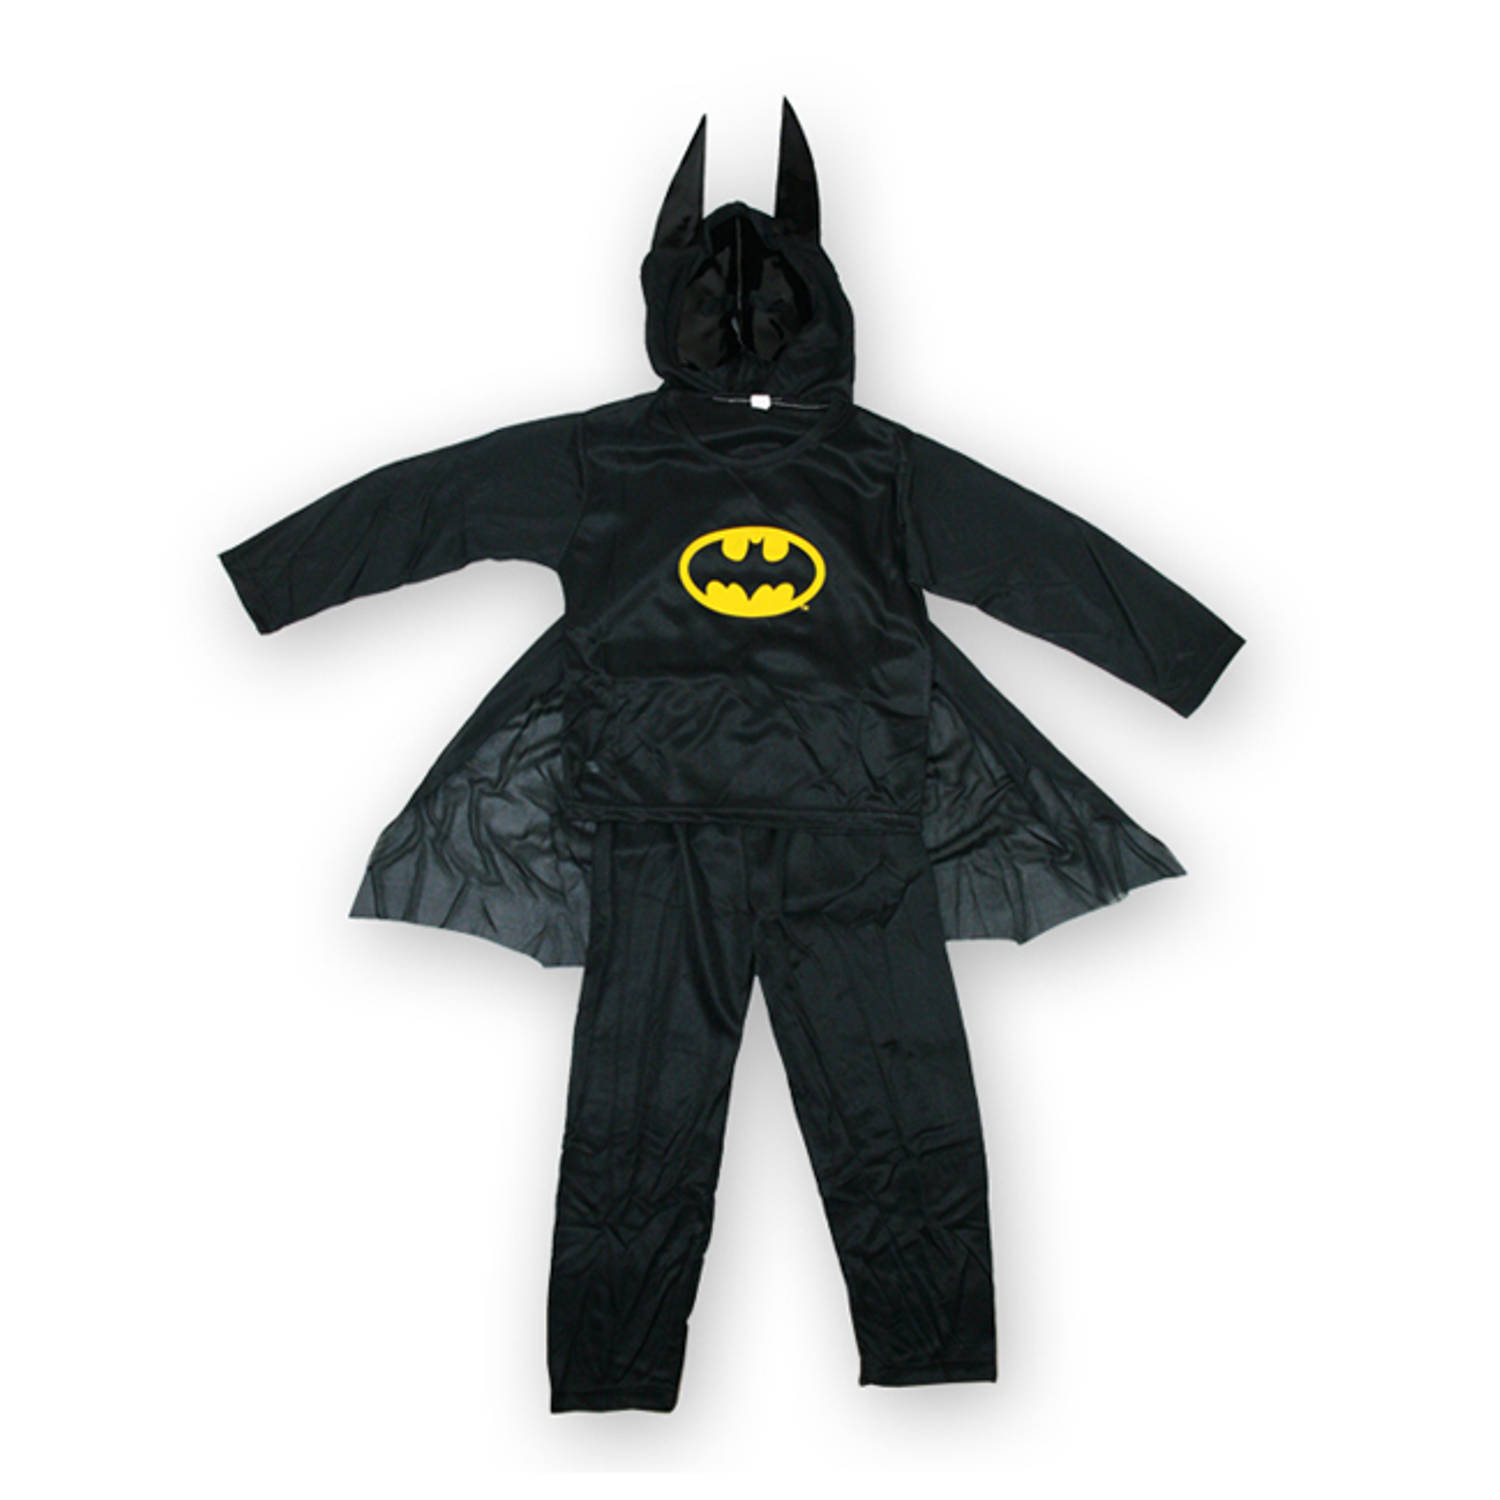 Batman kostuum kinderen maat M 110 120cm - verkleedkleding - carnavalskleding | Blokker